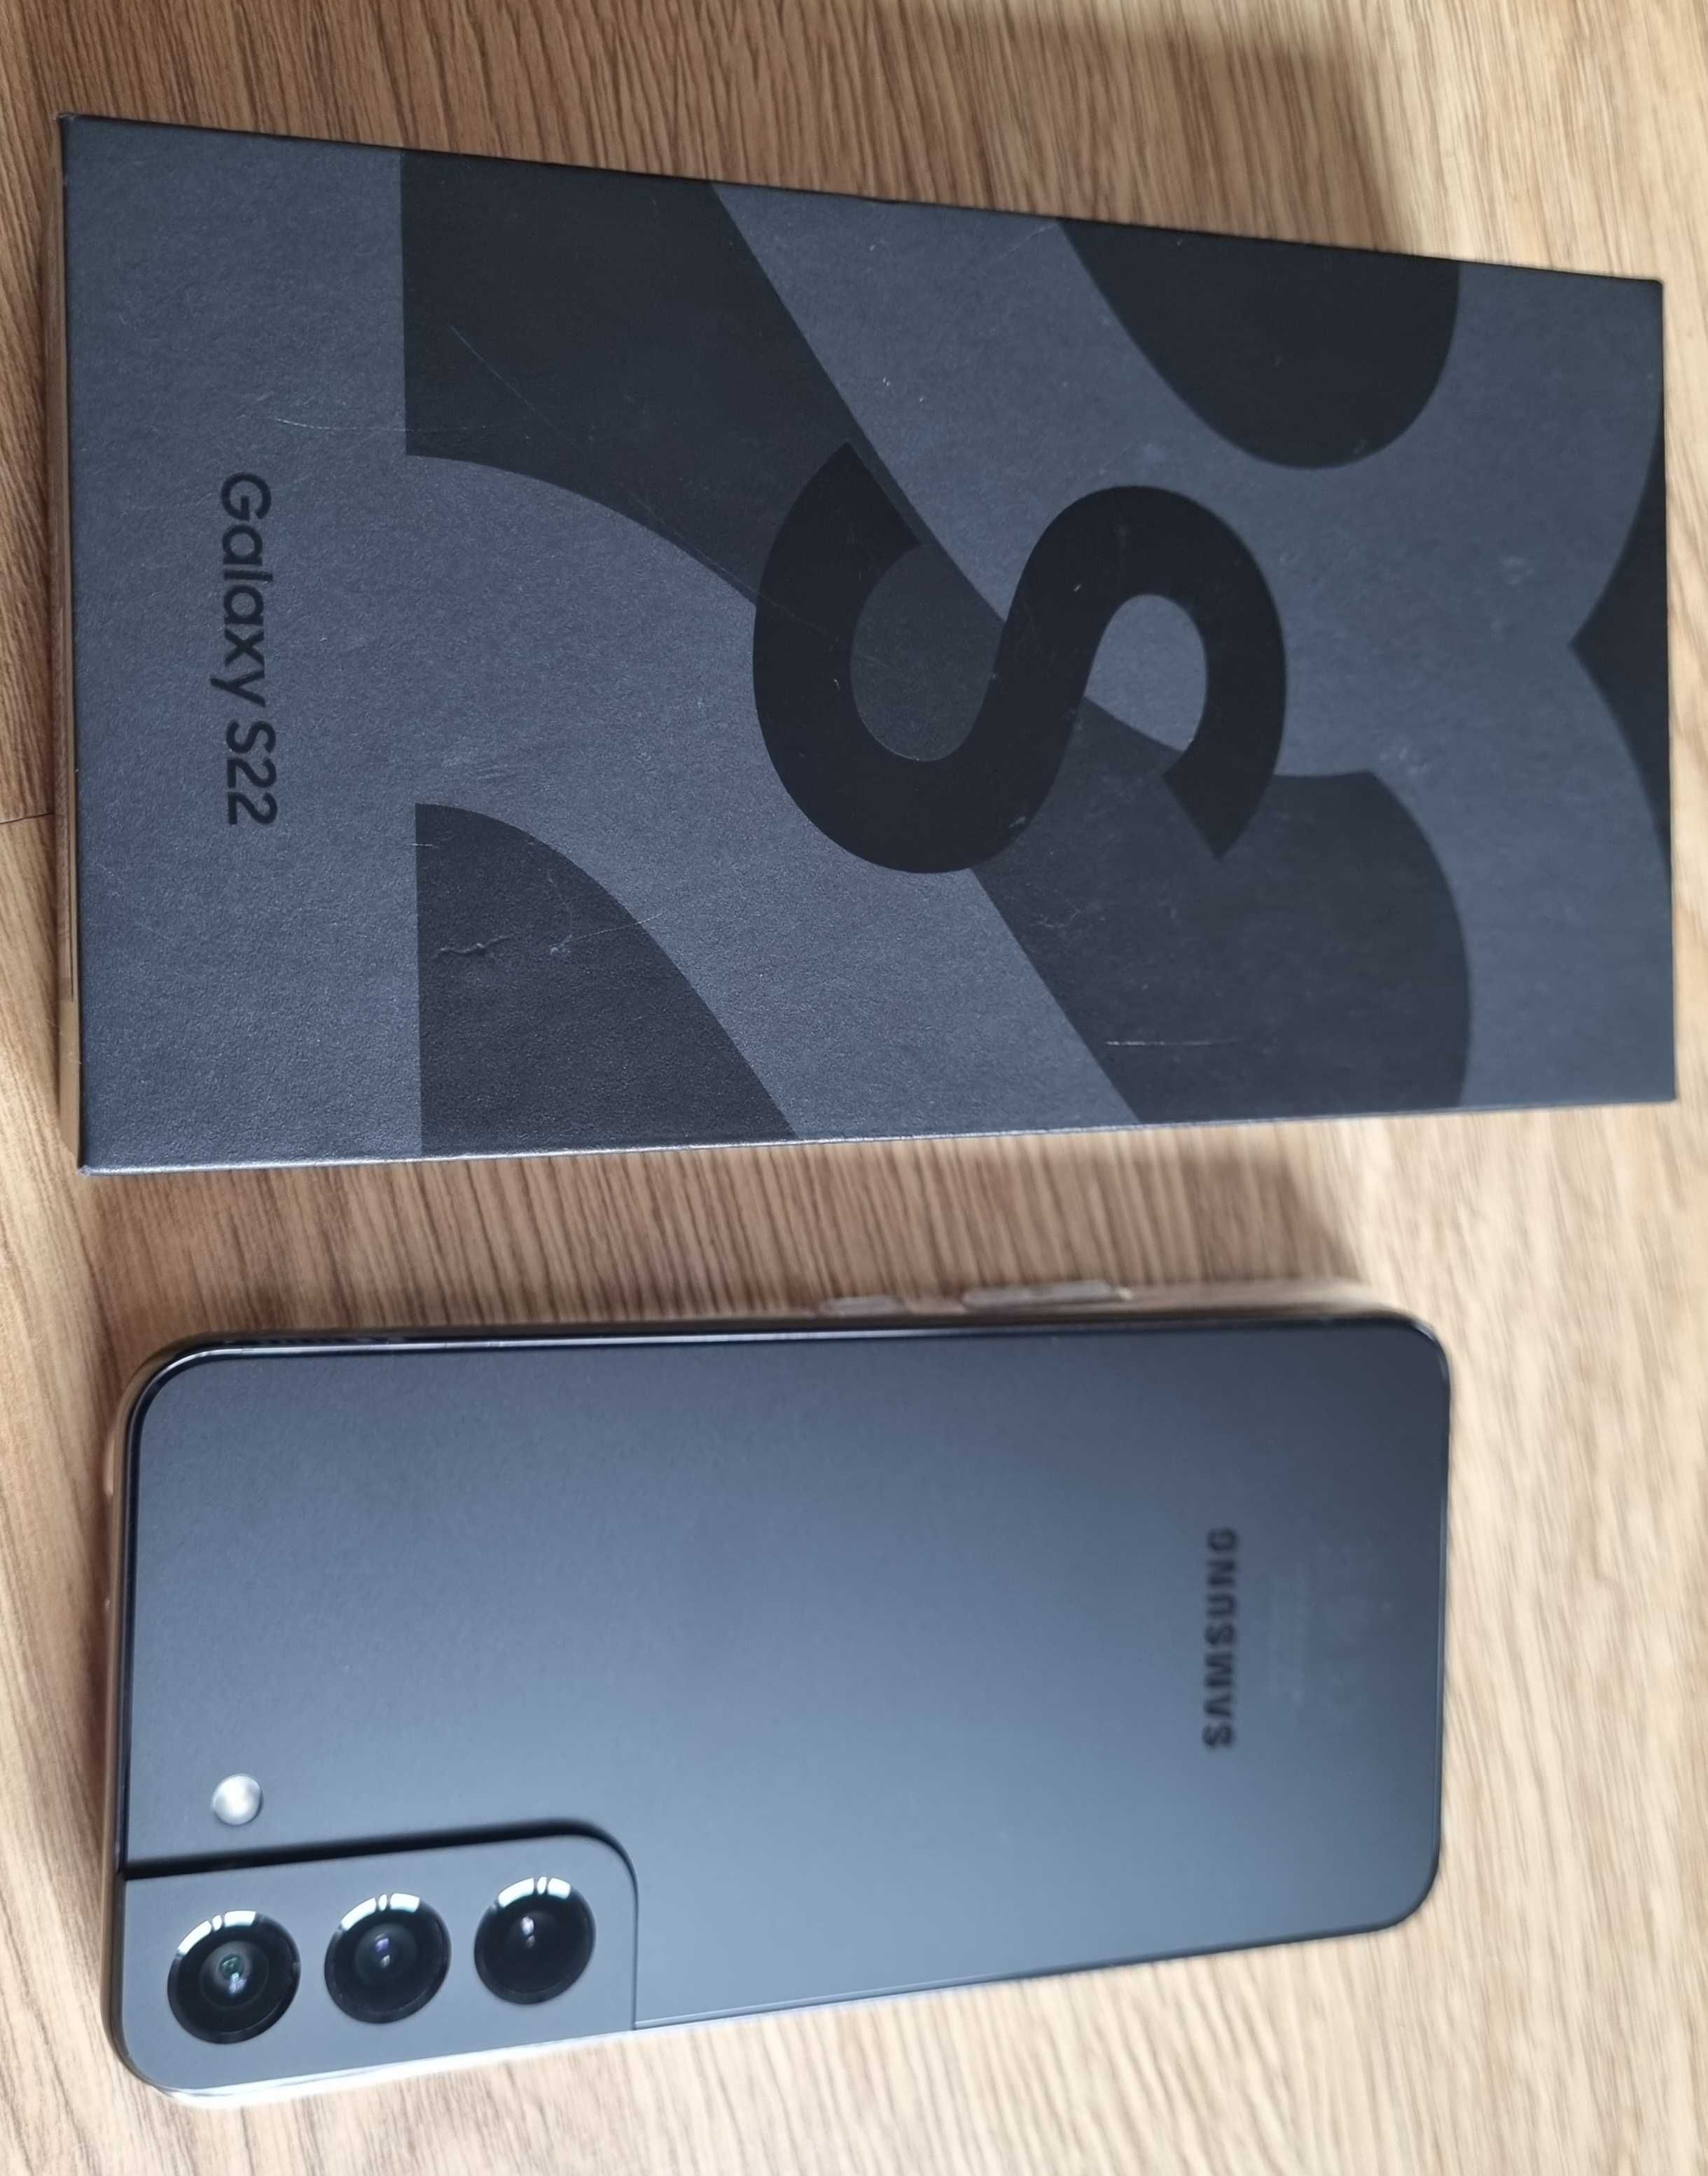 Nowy Samsung Galaxy S22 5g 256 czarny zamiana okazja